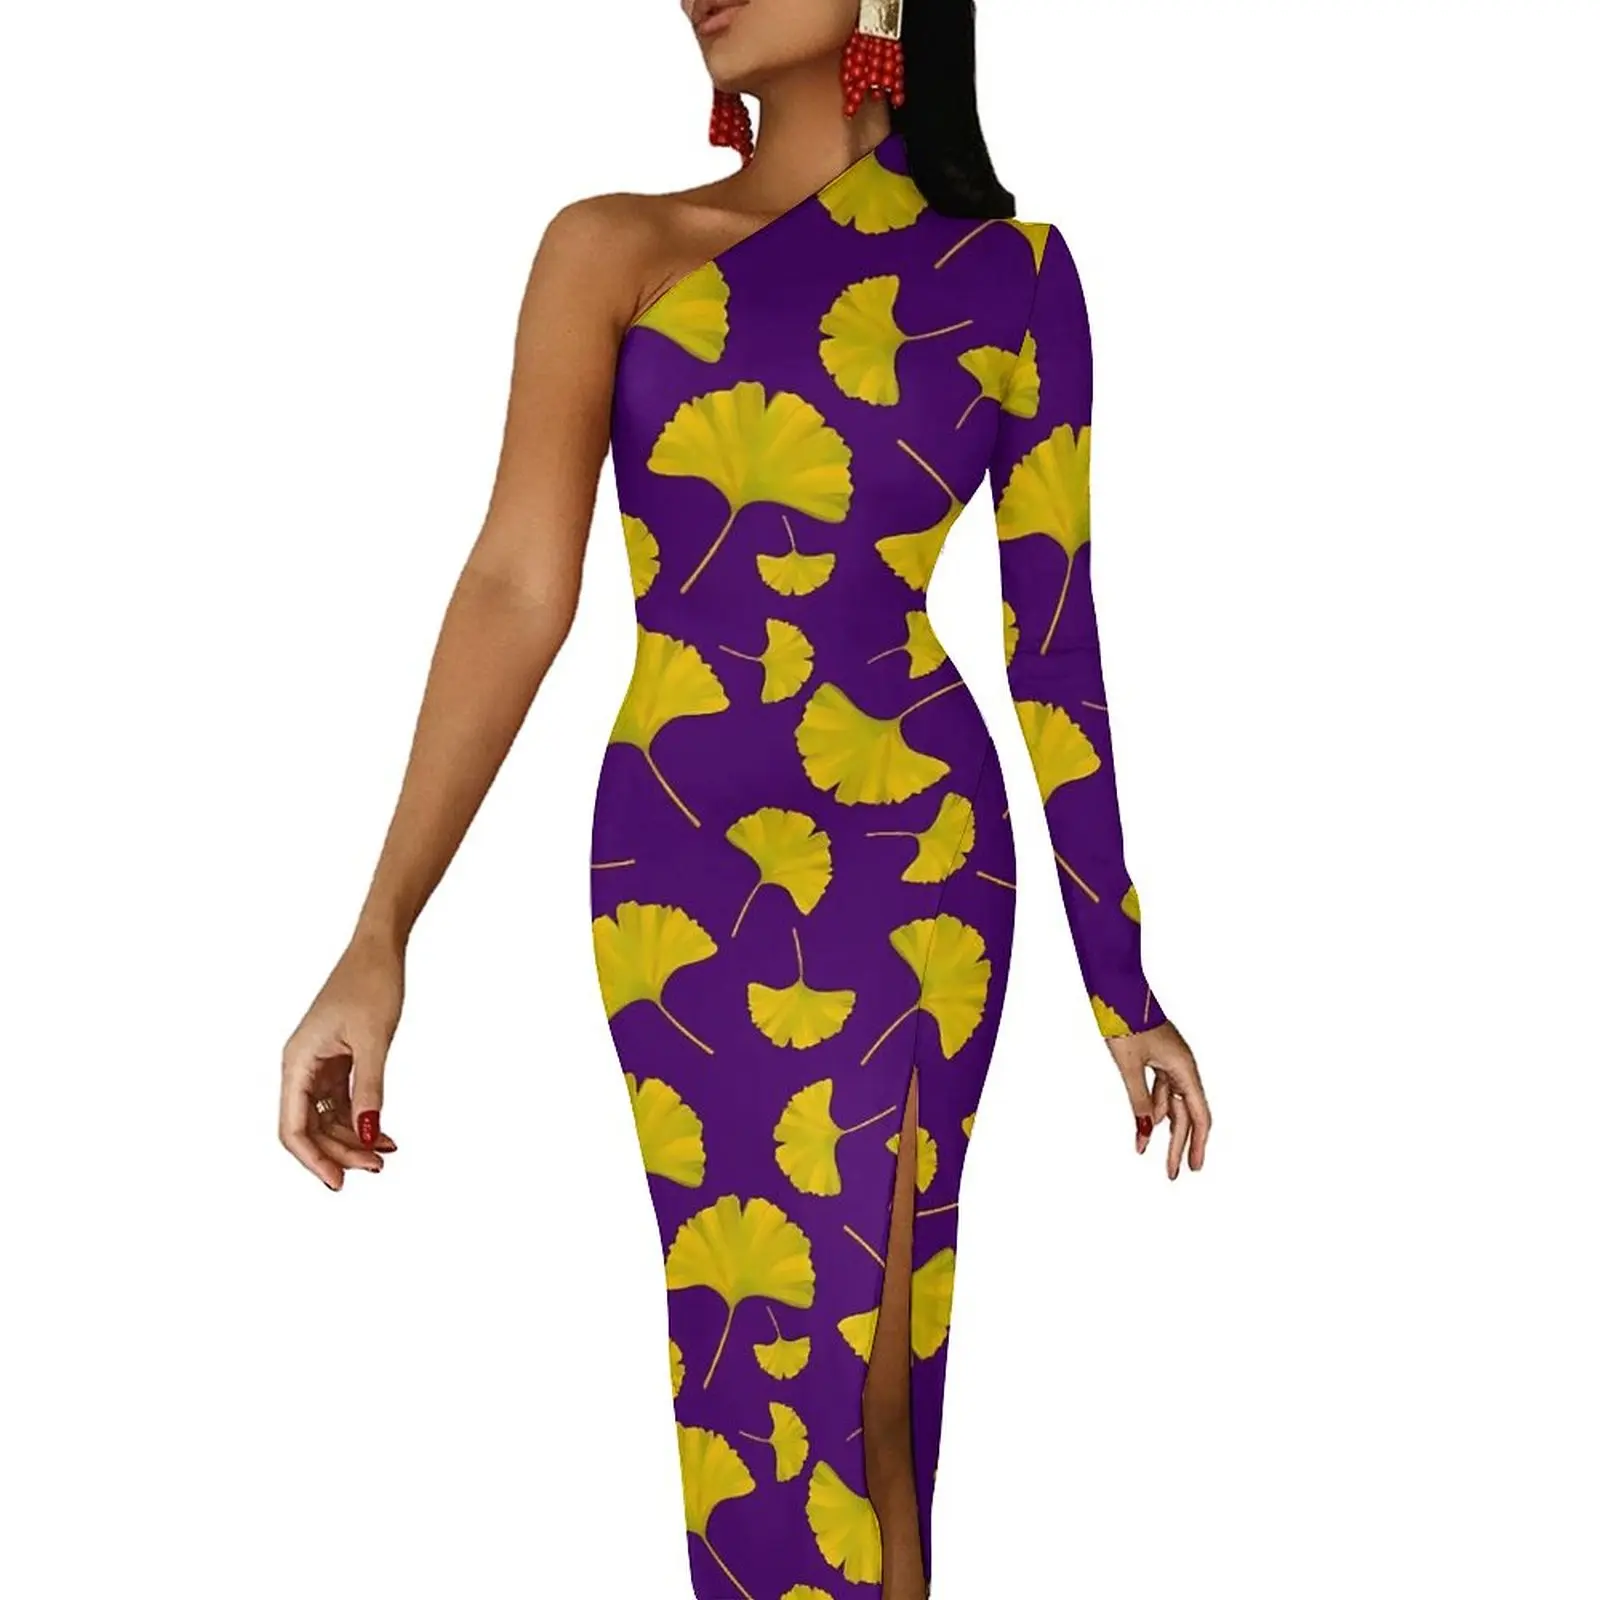 

Облегающее платье Ginkgo Biloba с принтом, весенние желтые и фиолетовые длинные платья с высоким разрезом и длинным рукавом, дизайнерское уличное платье